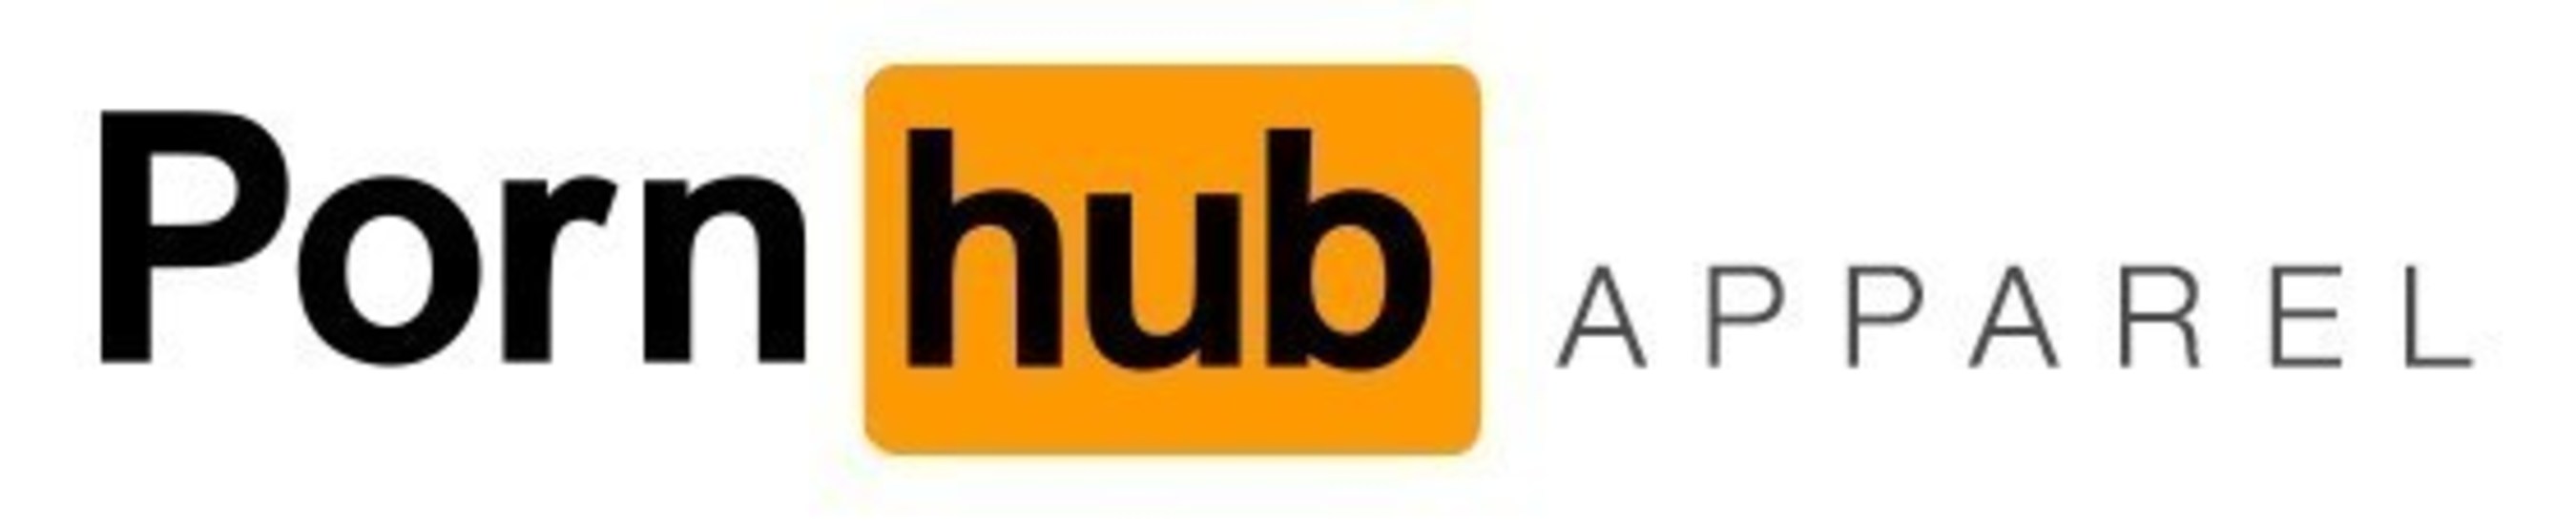 Pornhub Apparel Logo. 